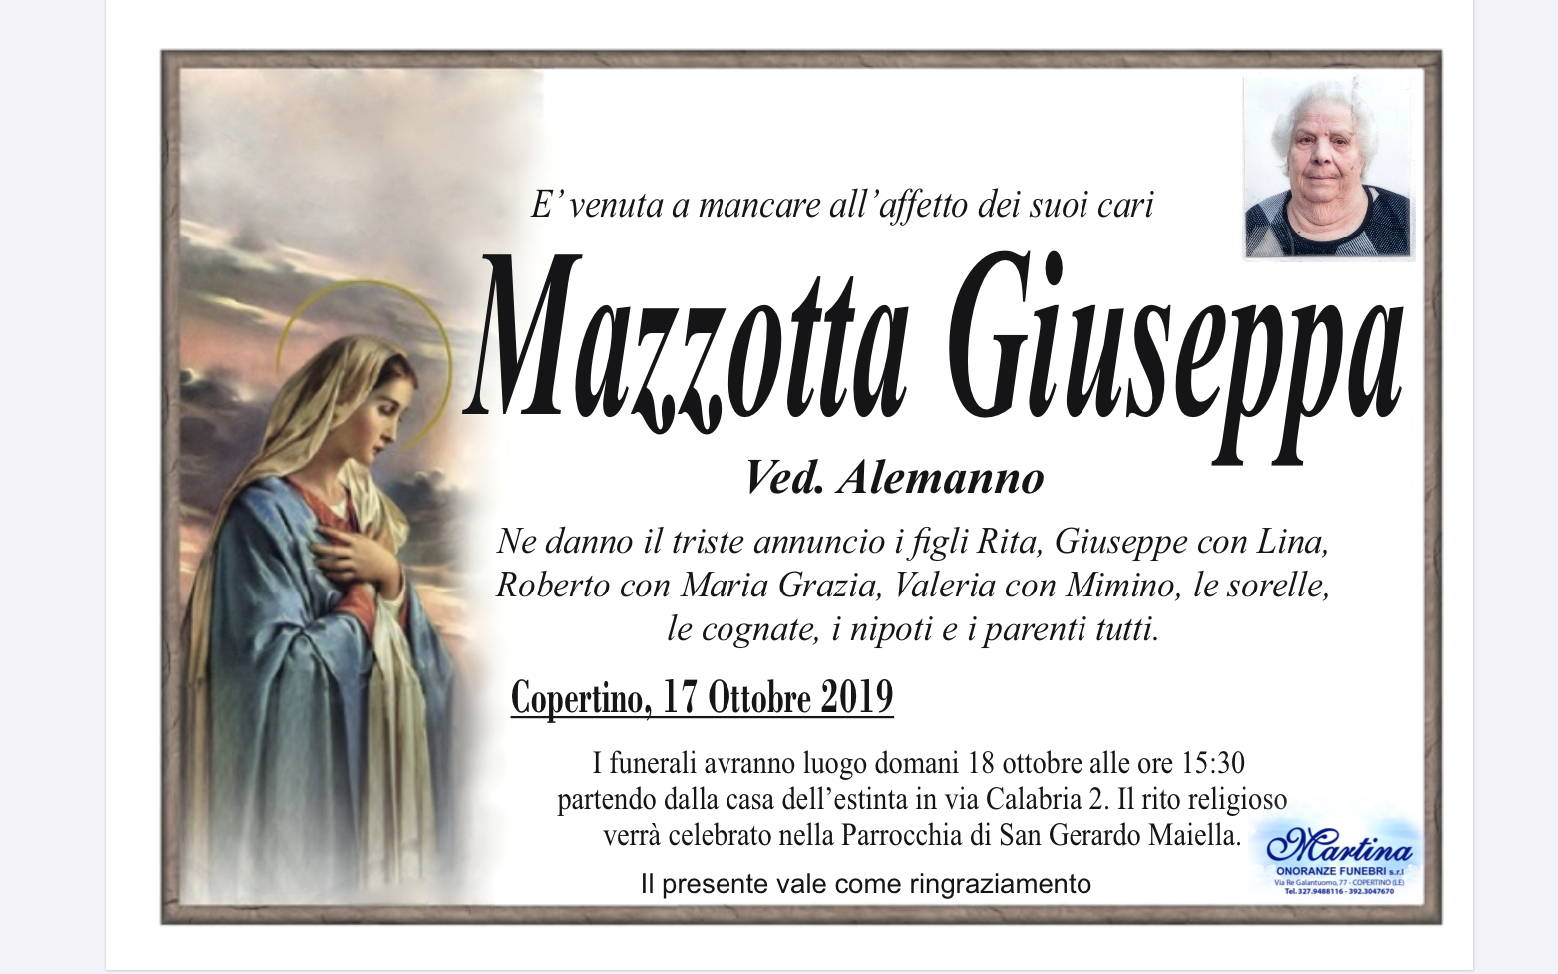 Giuseppa Mazzotta